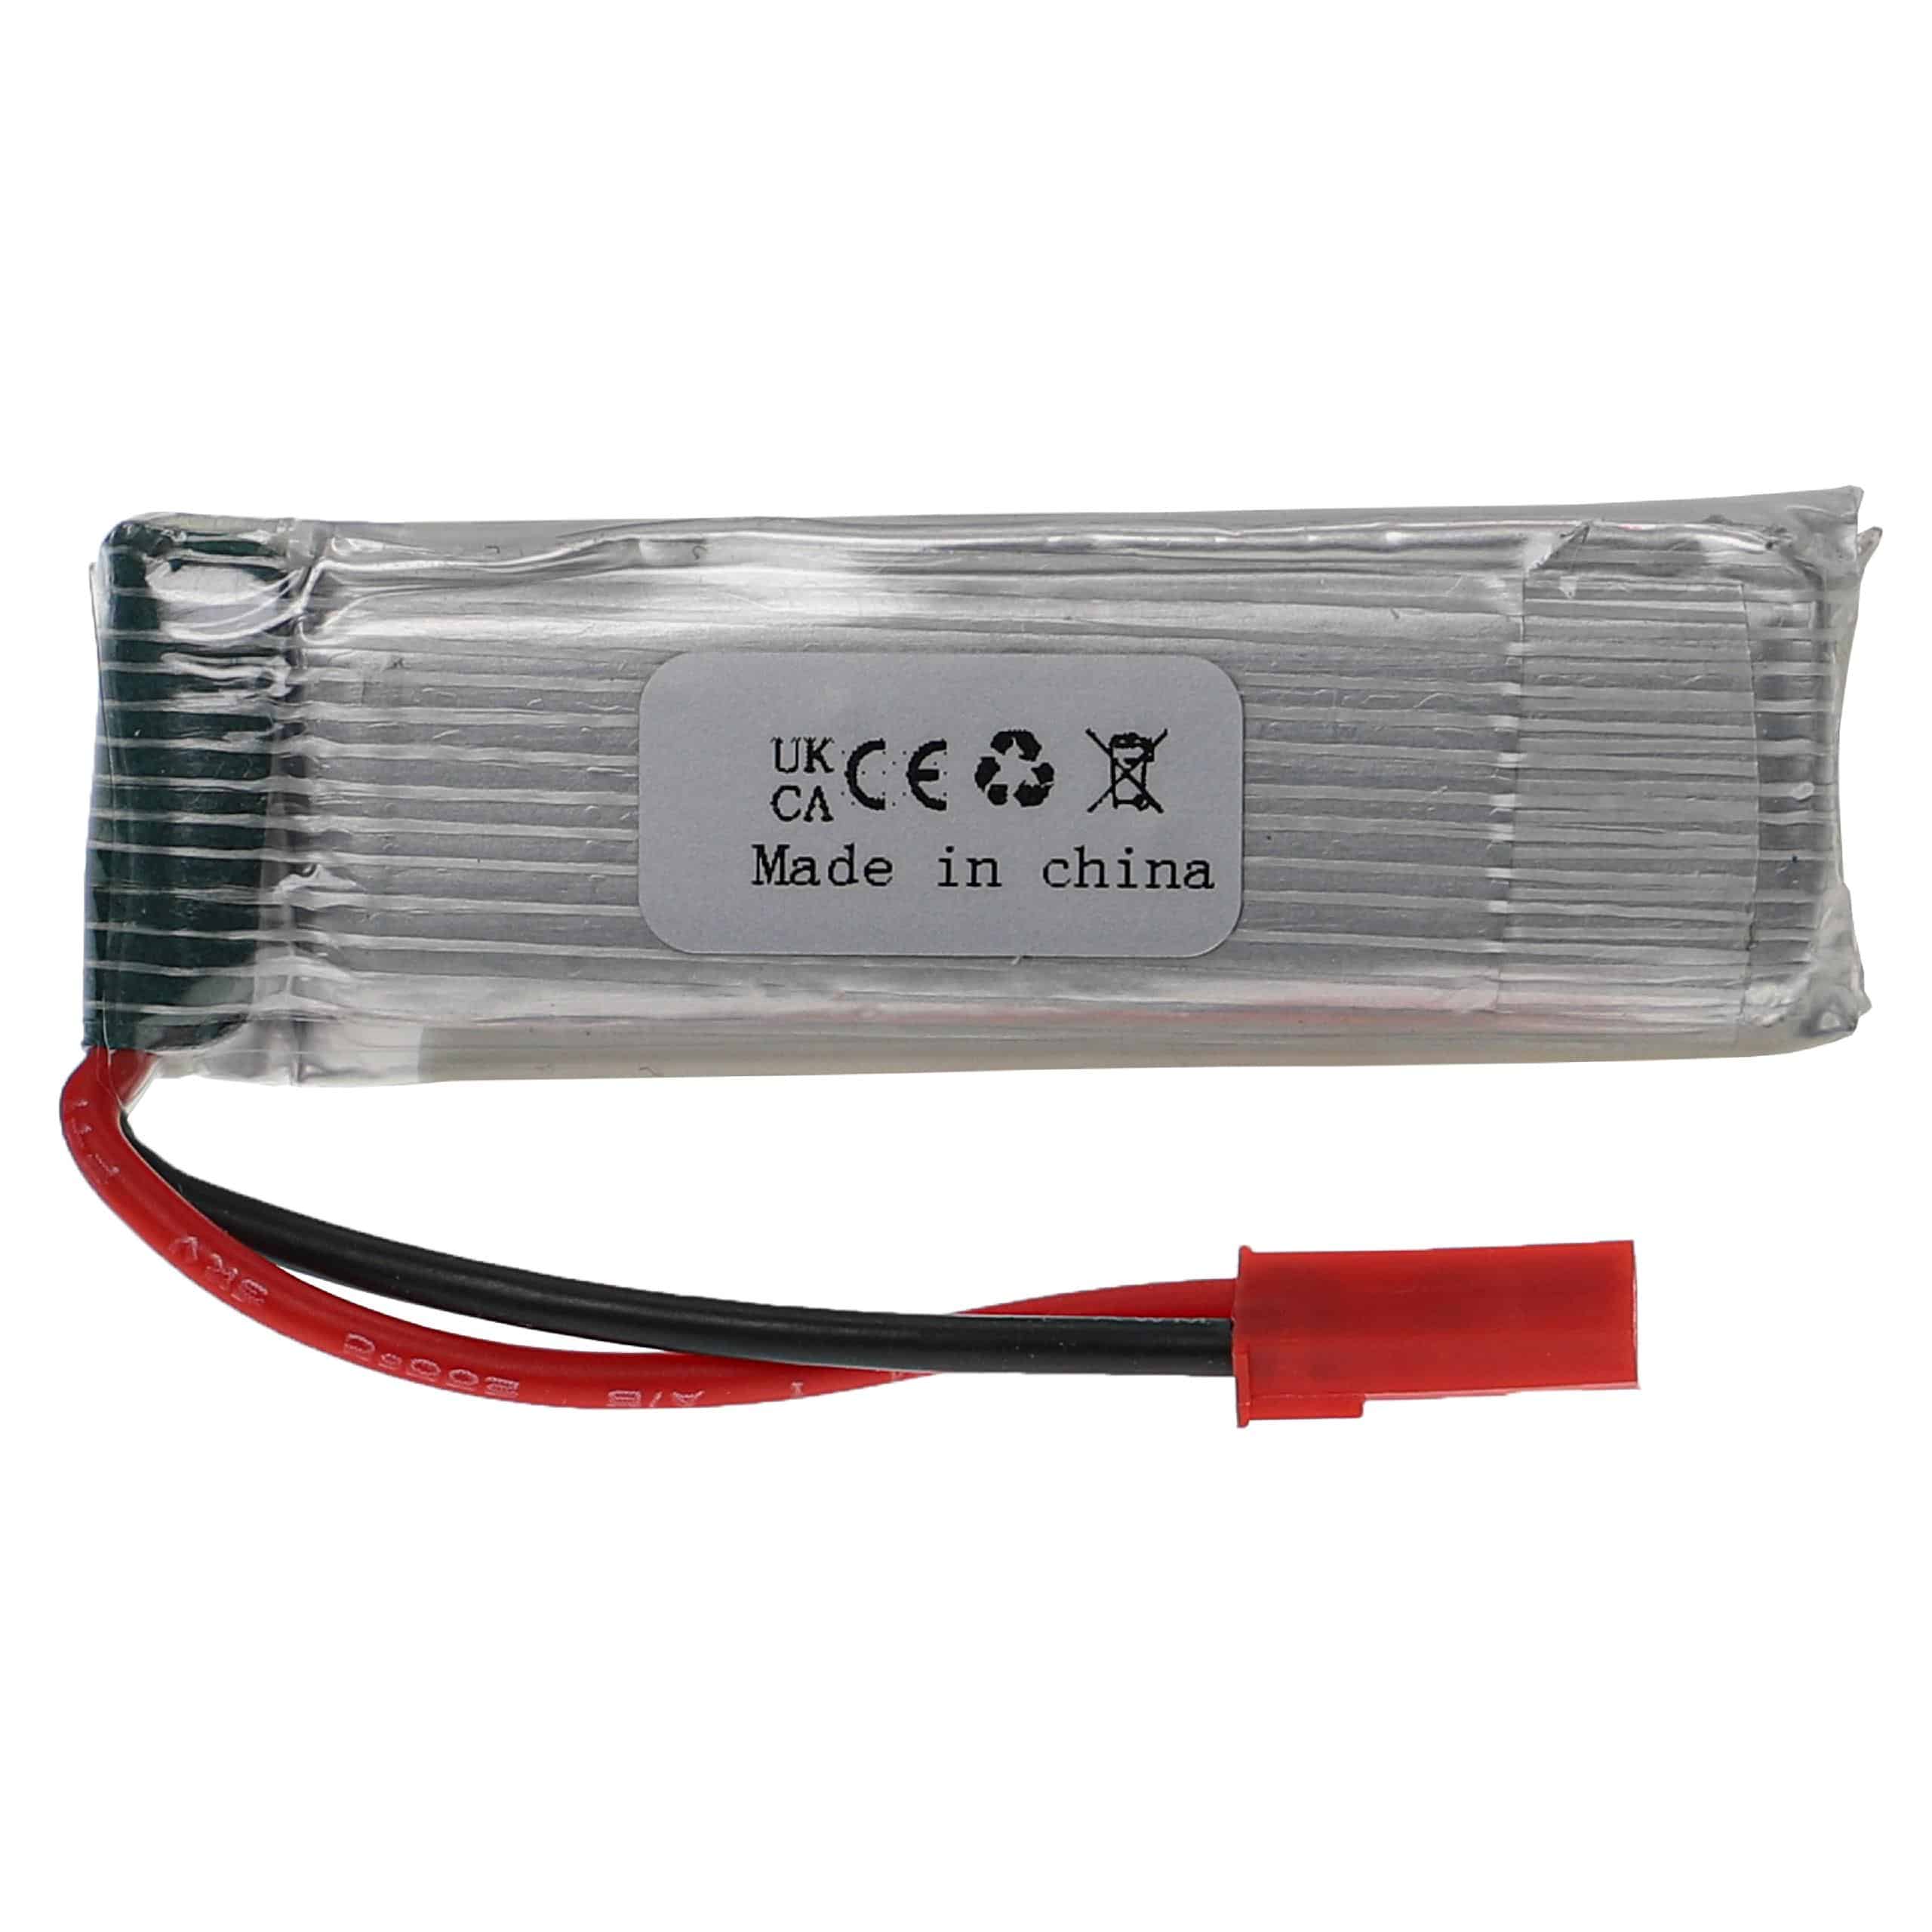 Batería para dispositivos modelismo - 500 mAh 3,7 V Li-poli, BEC